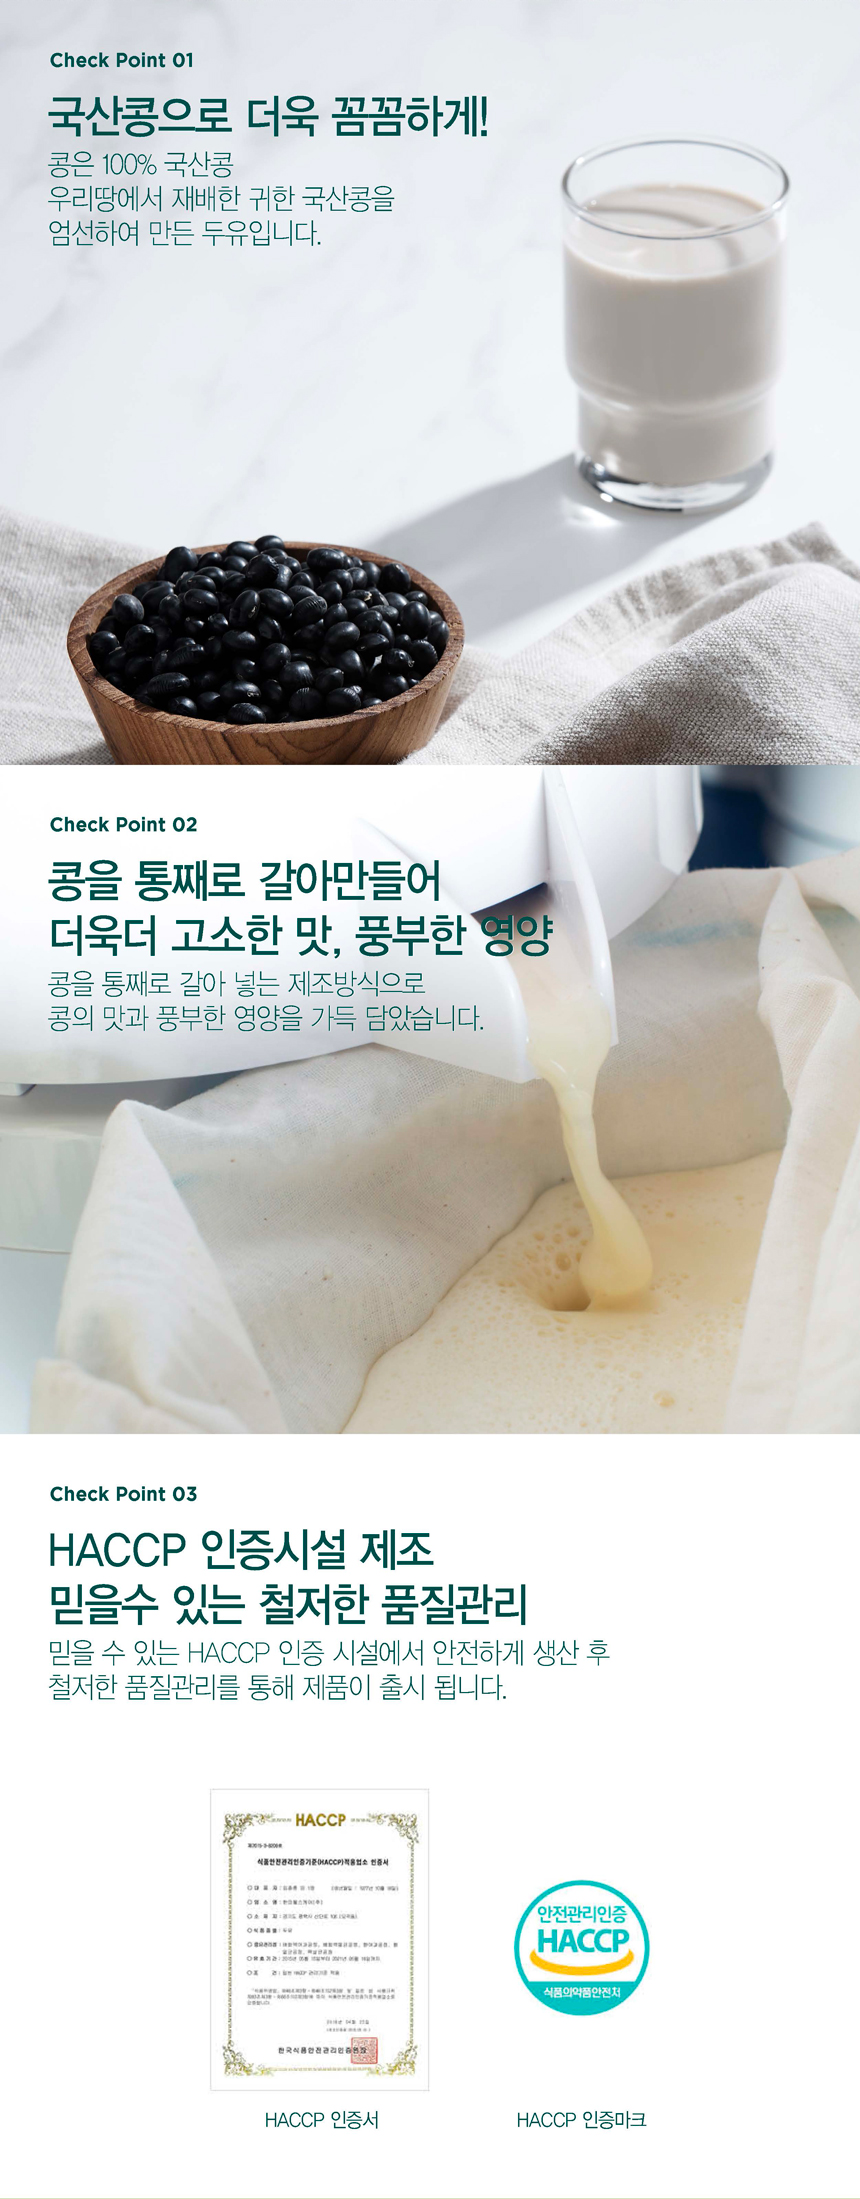 韓國食品-[Erom] Hwang Sung Joo Korean Soymilk Bean Drink - [Hi-Calcium Black Bean] 190ml